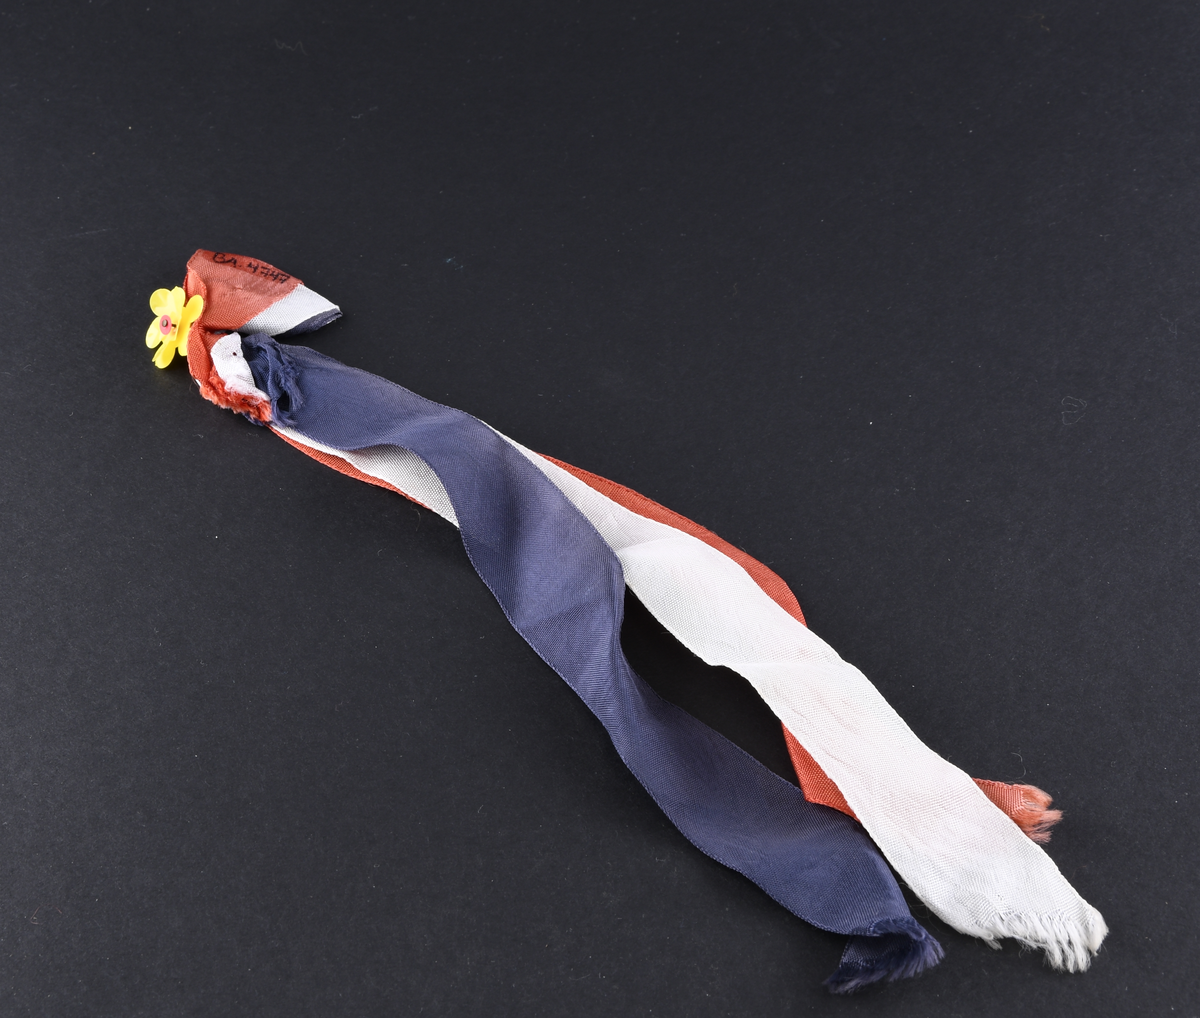 17. Mai sløyfe. Består av tre tekstilbånd i rødt, hvit og blått som er lagt dobbelt i øvrekant. Båndene er festet med nål som øverst har en gul blomst av plast. Nedre deler av båndene har skrå sårkanter.